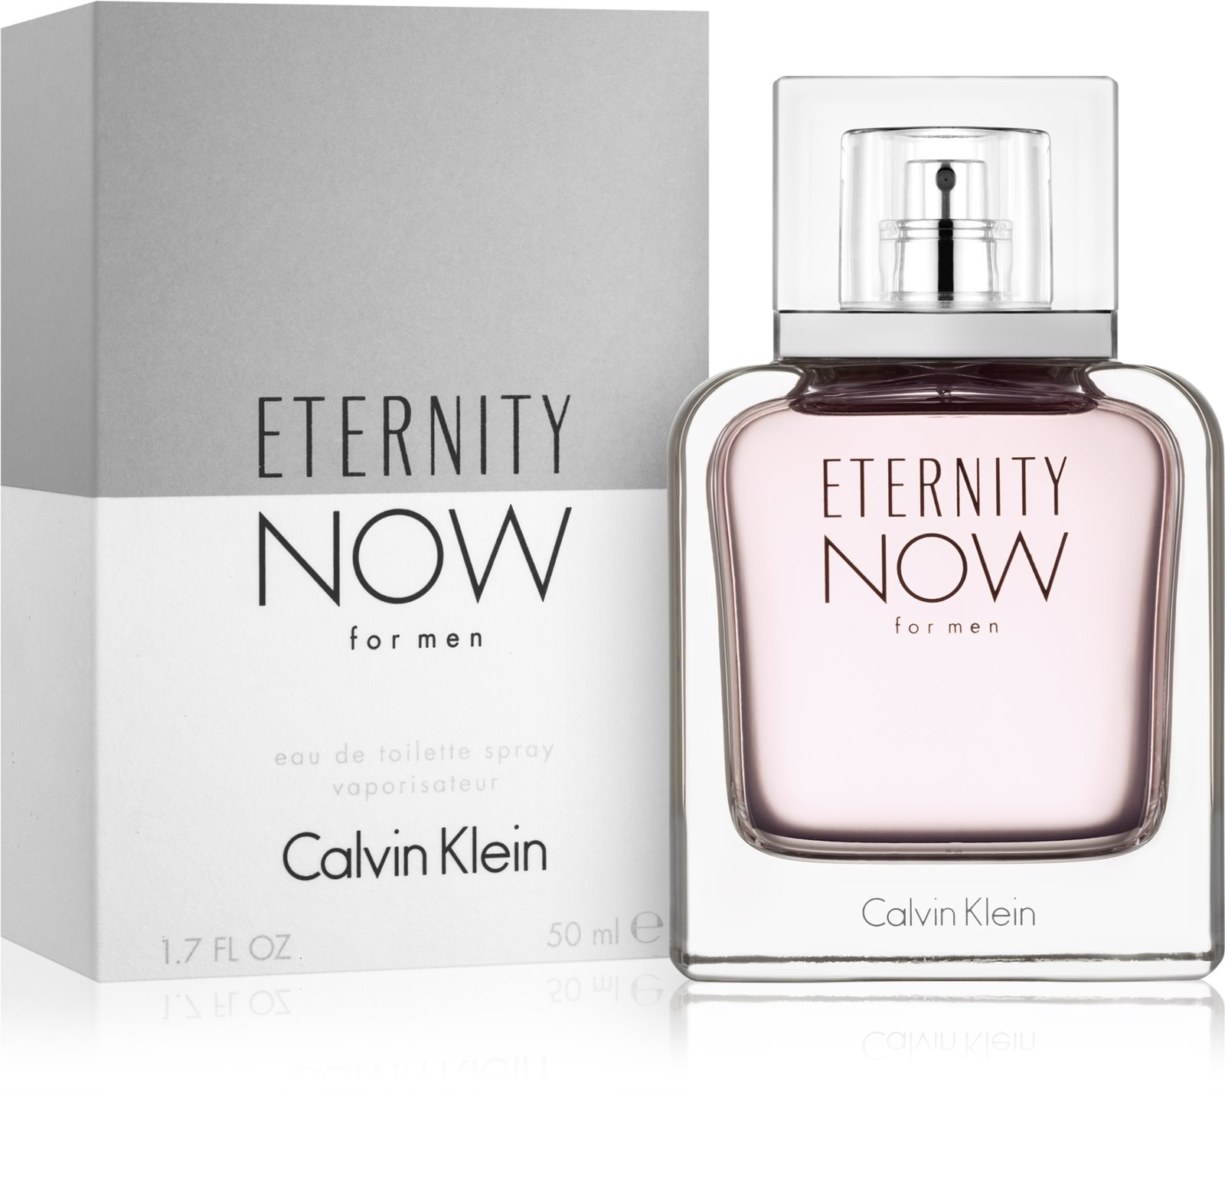 Eternity Now de Calvin Klein - Calvin Klein Eternity Now